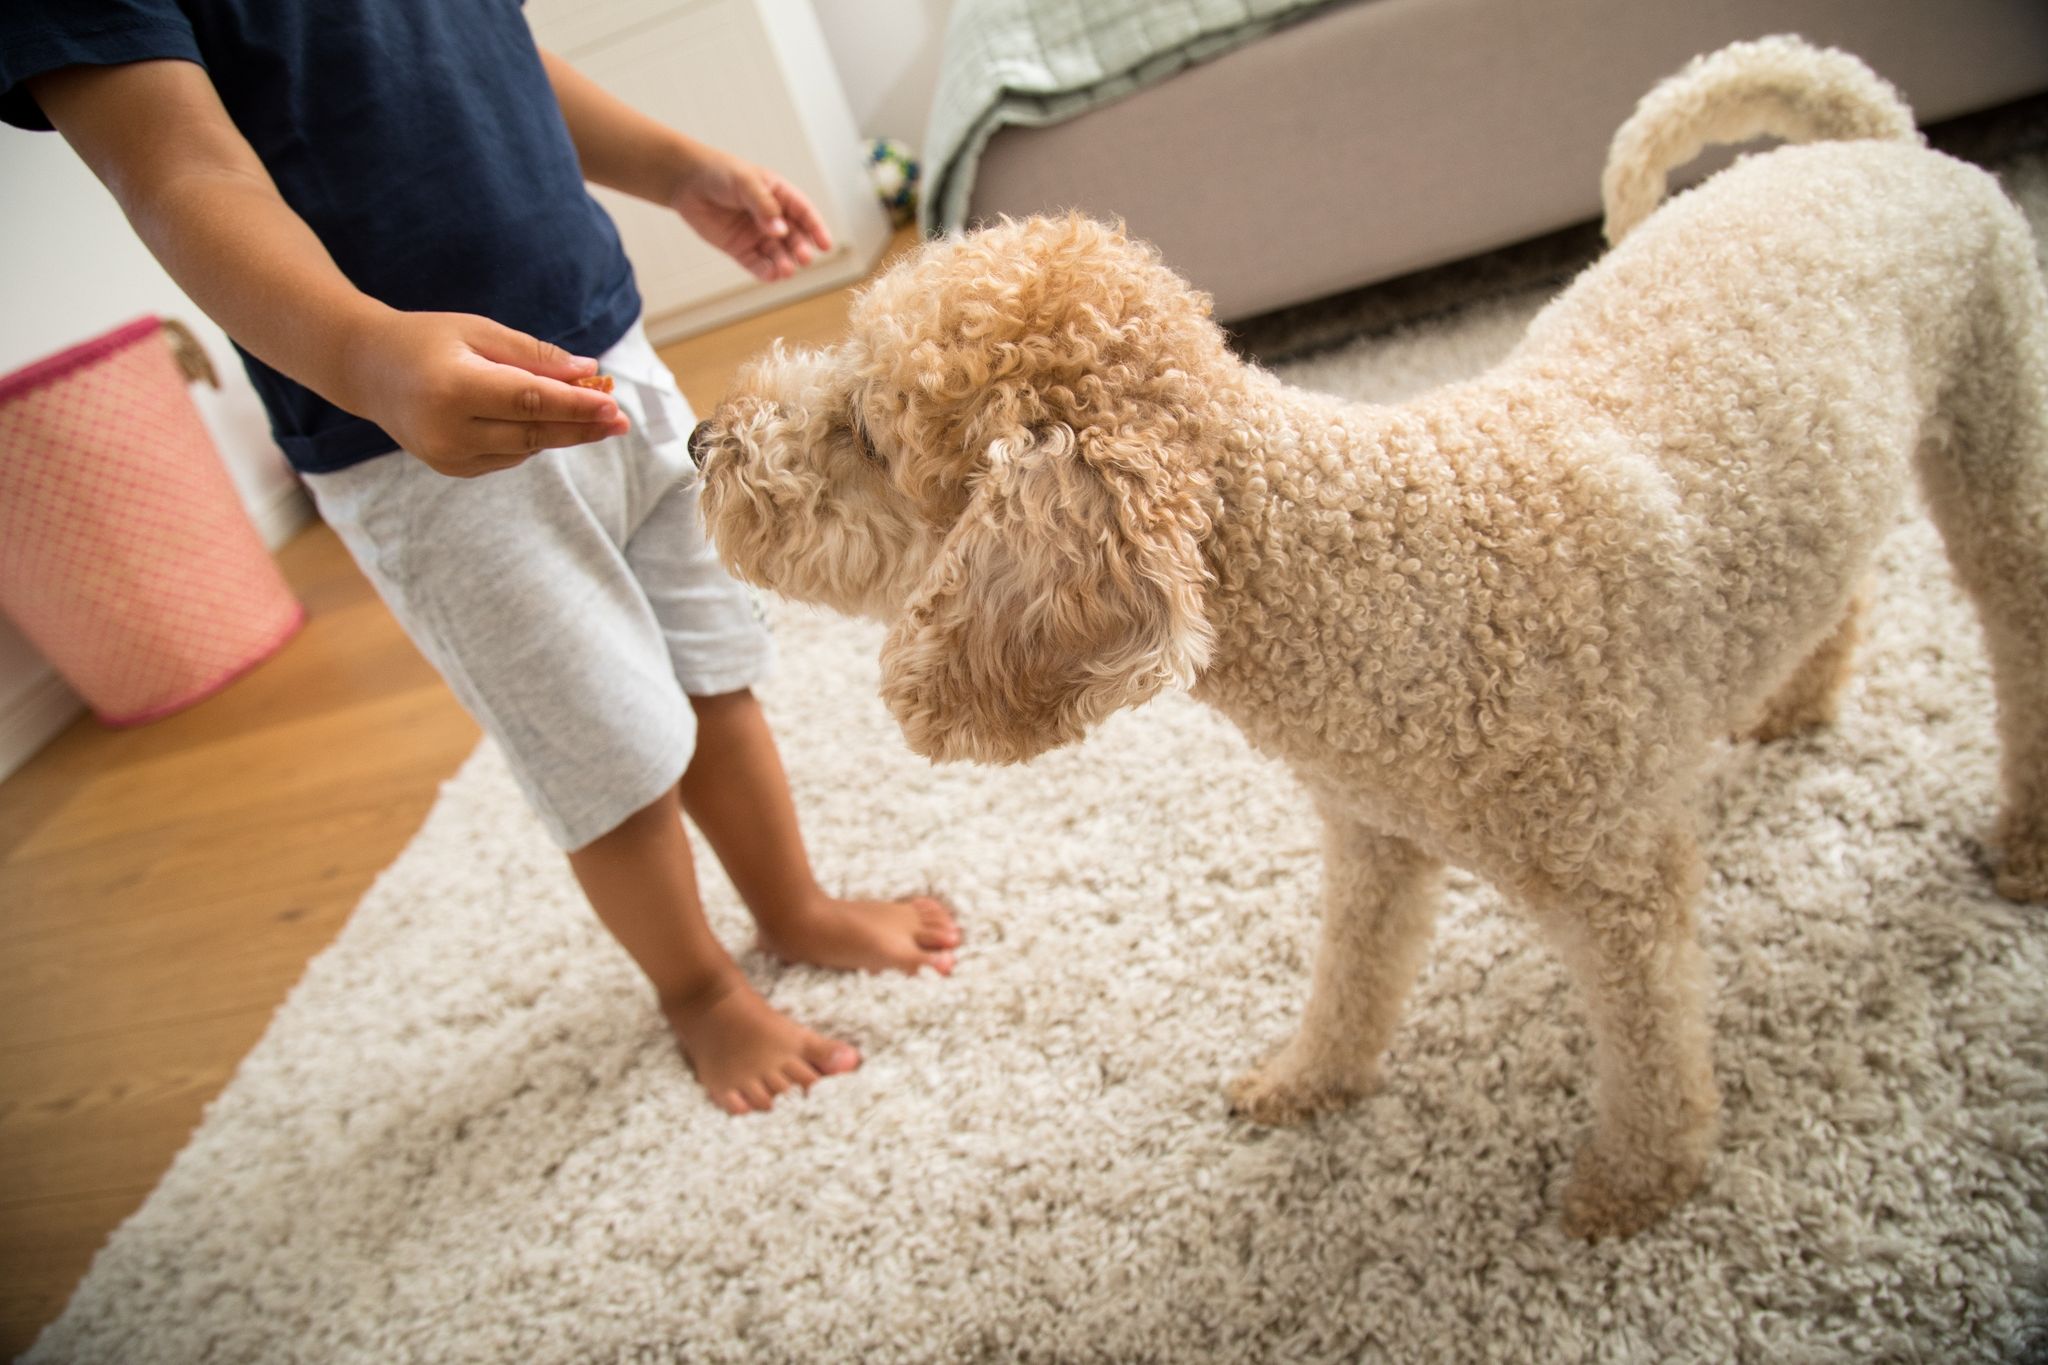 Viele Kinder schaffen es nicht, sich jeden Tag ausreichend körperlich zu betätigen. Ob ein Hund im Haus da helfen kann?